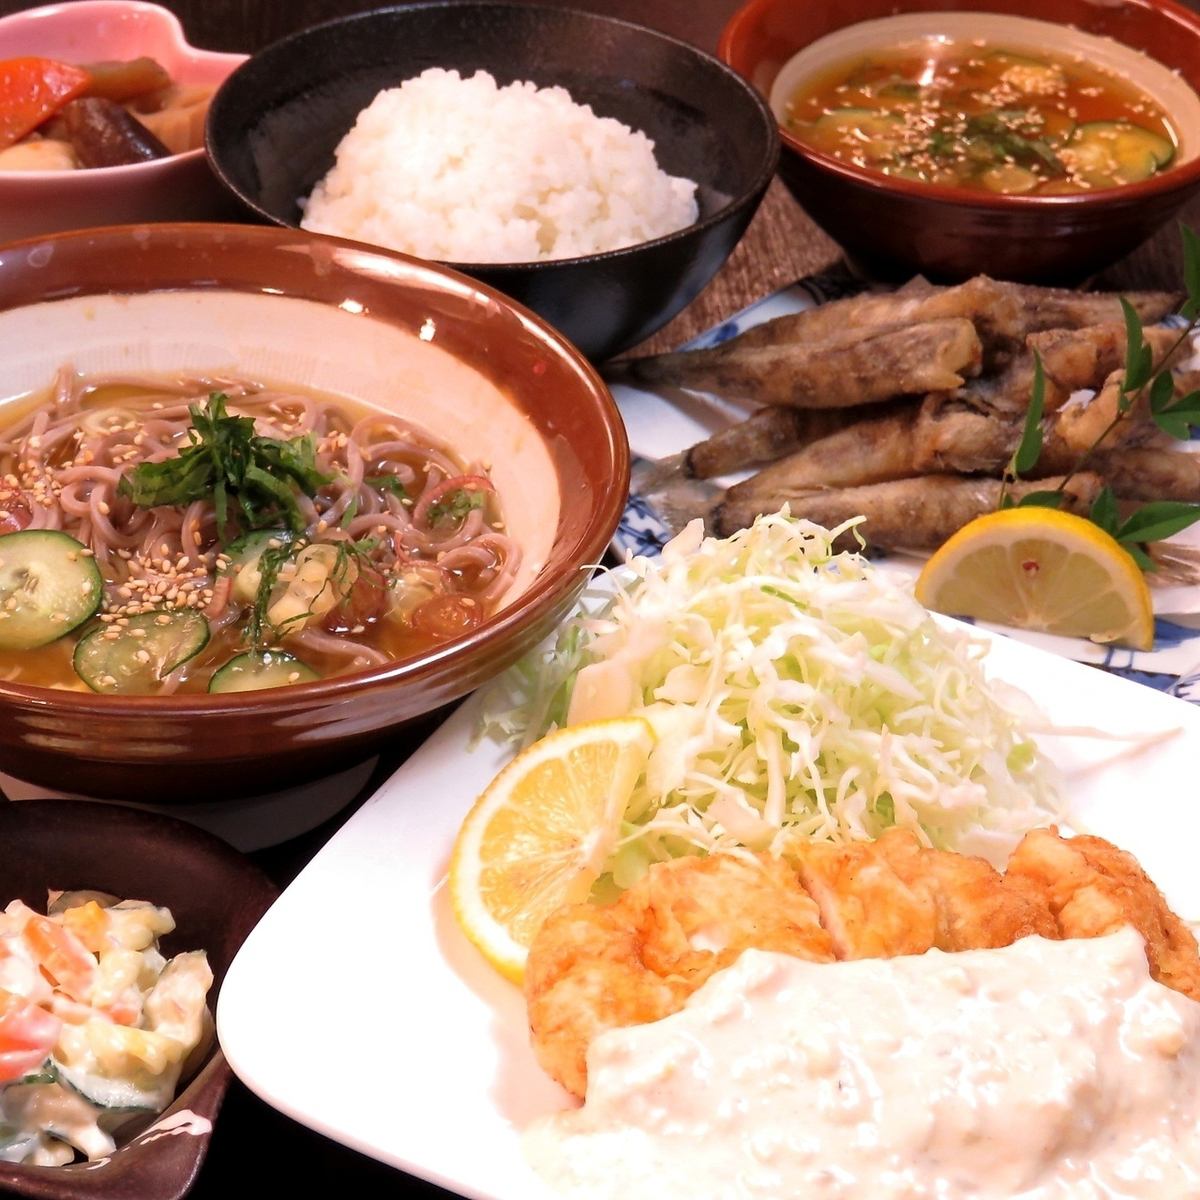 您可以享受節日菜單和宮崎當地美食◎這是一個有趣且受歡迎的居酒屋♪